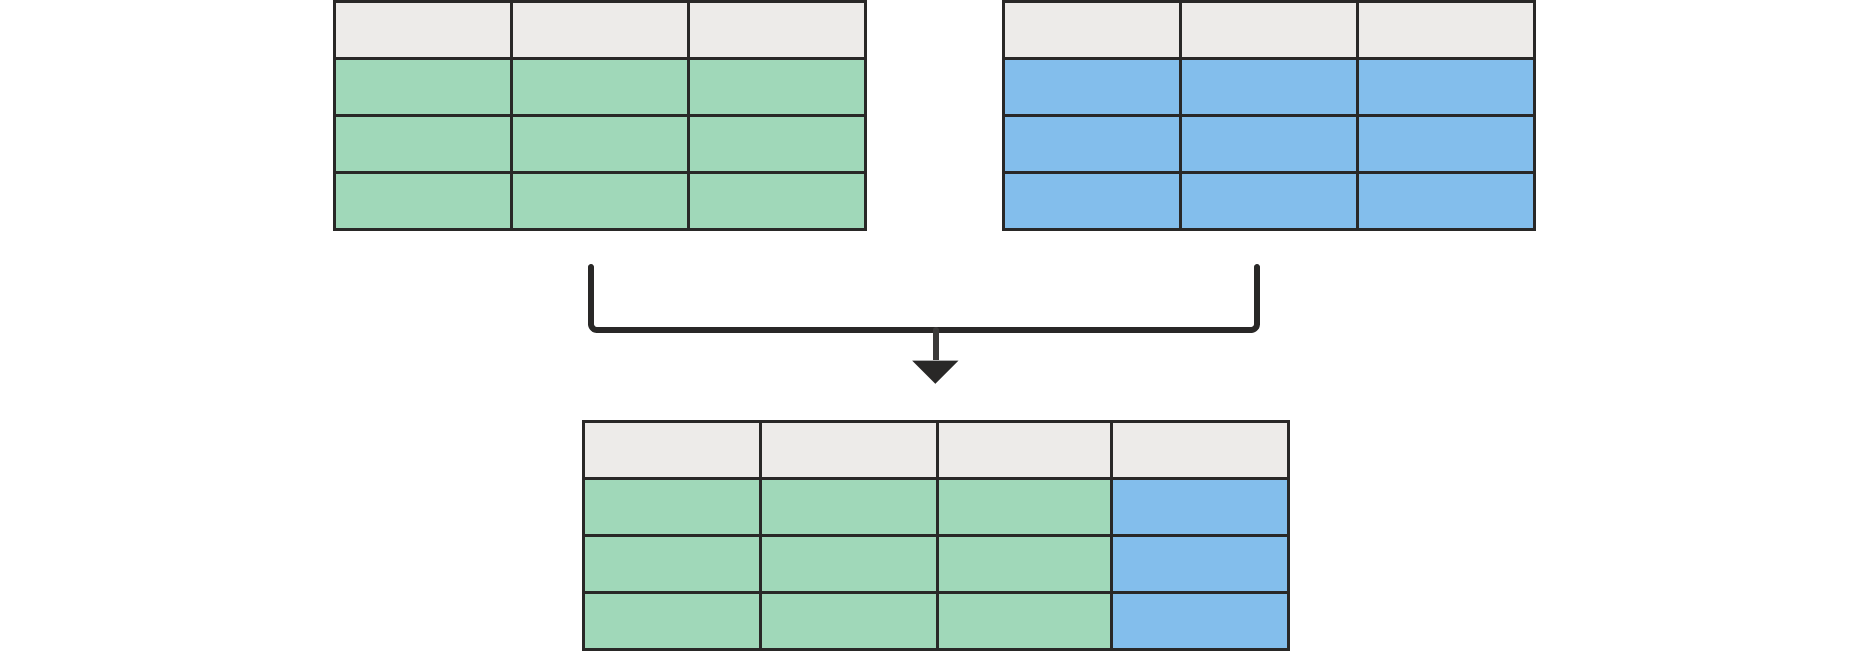 Das Diagramm zeigt oben zwei leere Tabellen, die unten zu einer Tabelle mit allen Spalten der linken Tabelle und einer Spalte der rechten Tabelle zusammengeführt werden.